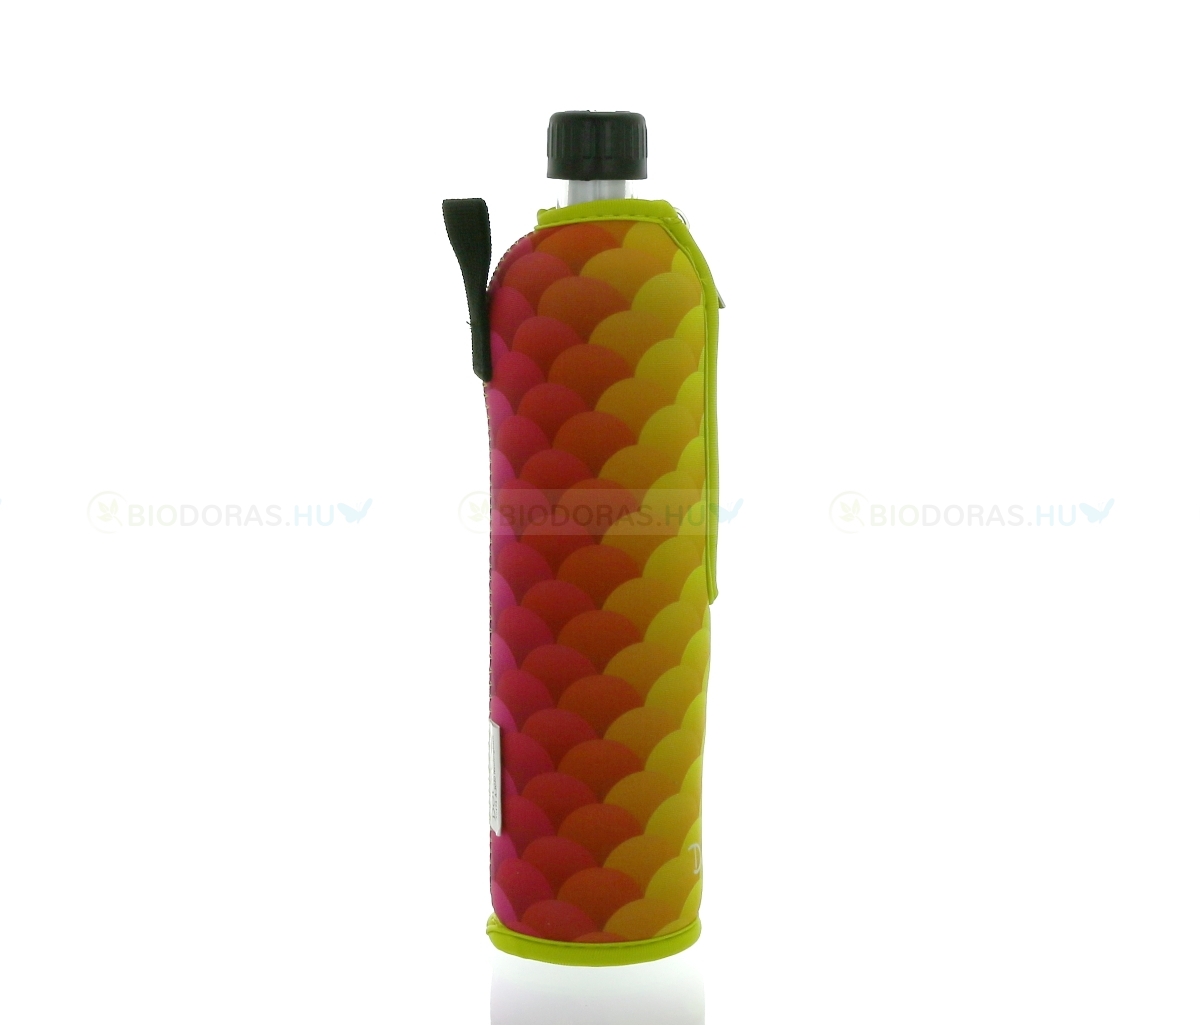 DORAS Üvegkulacs (üvegpalack) színes pikkely mintás neoprén huzattal - 500 ml